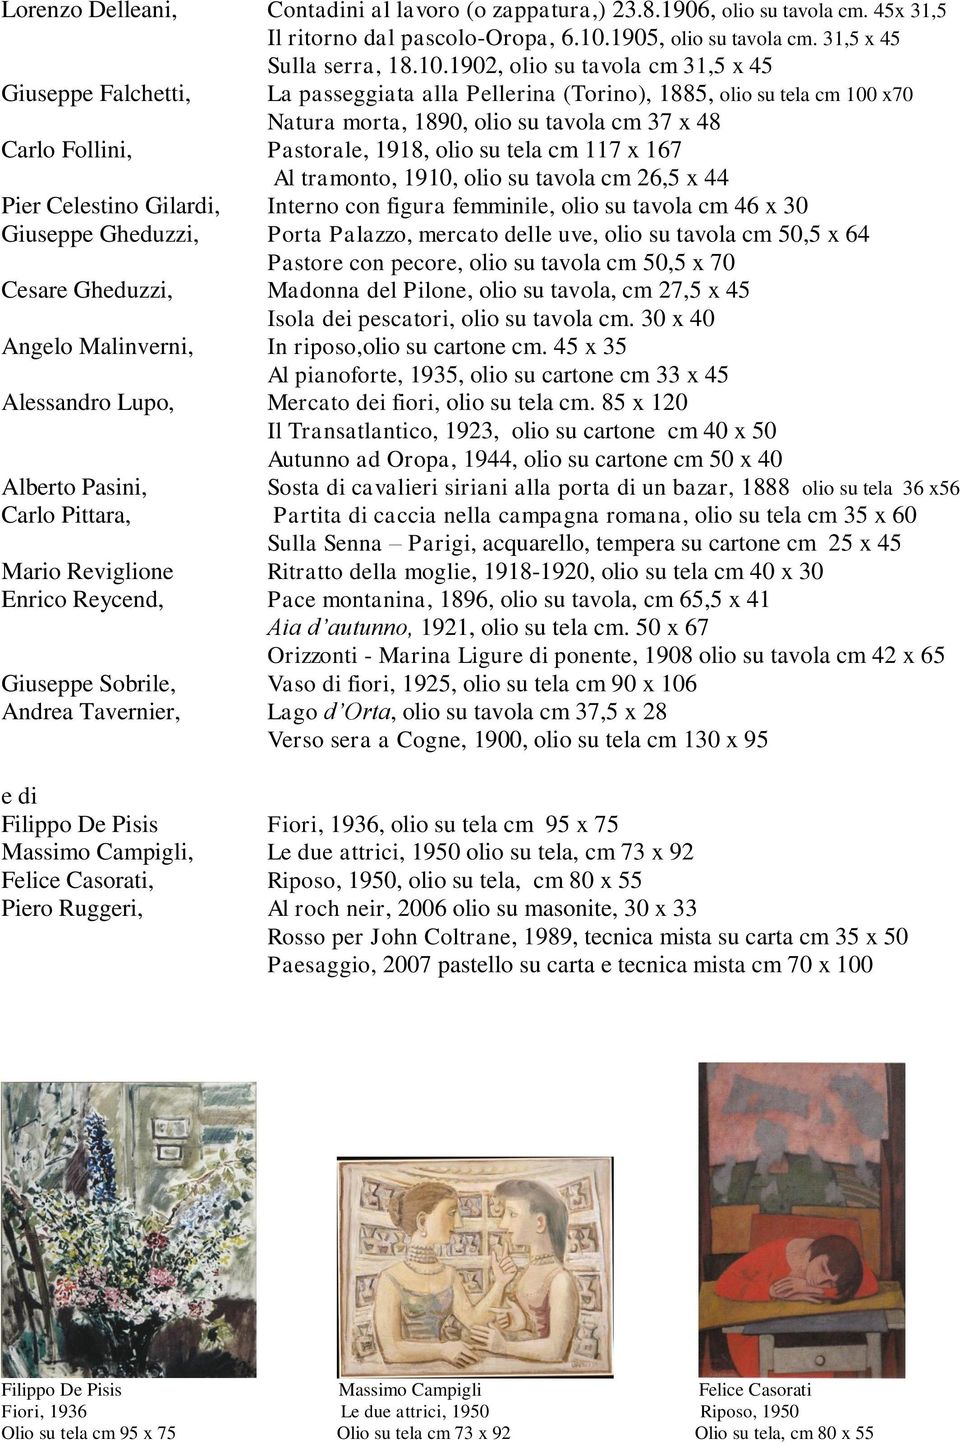 1902, olio su tavola cm 31,5 x 45 Giuseppe Falchetti, La passeggiata alla Pellerina (Torino), 1885, olio su tela cm 100 x70 Natura morta, 1890, olio su tavola cm 37 x 48 Carlo Follini, Pastorale,